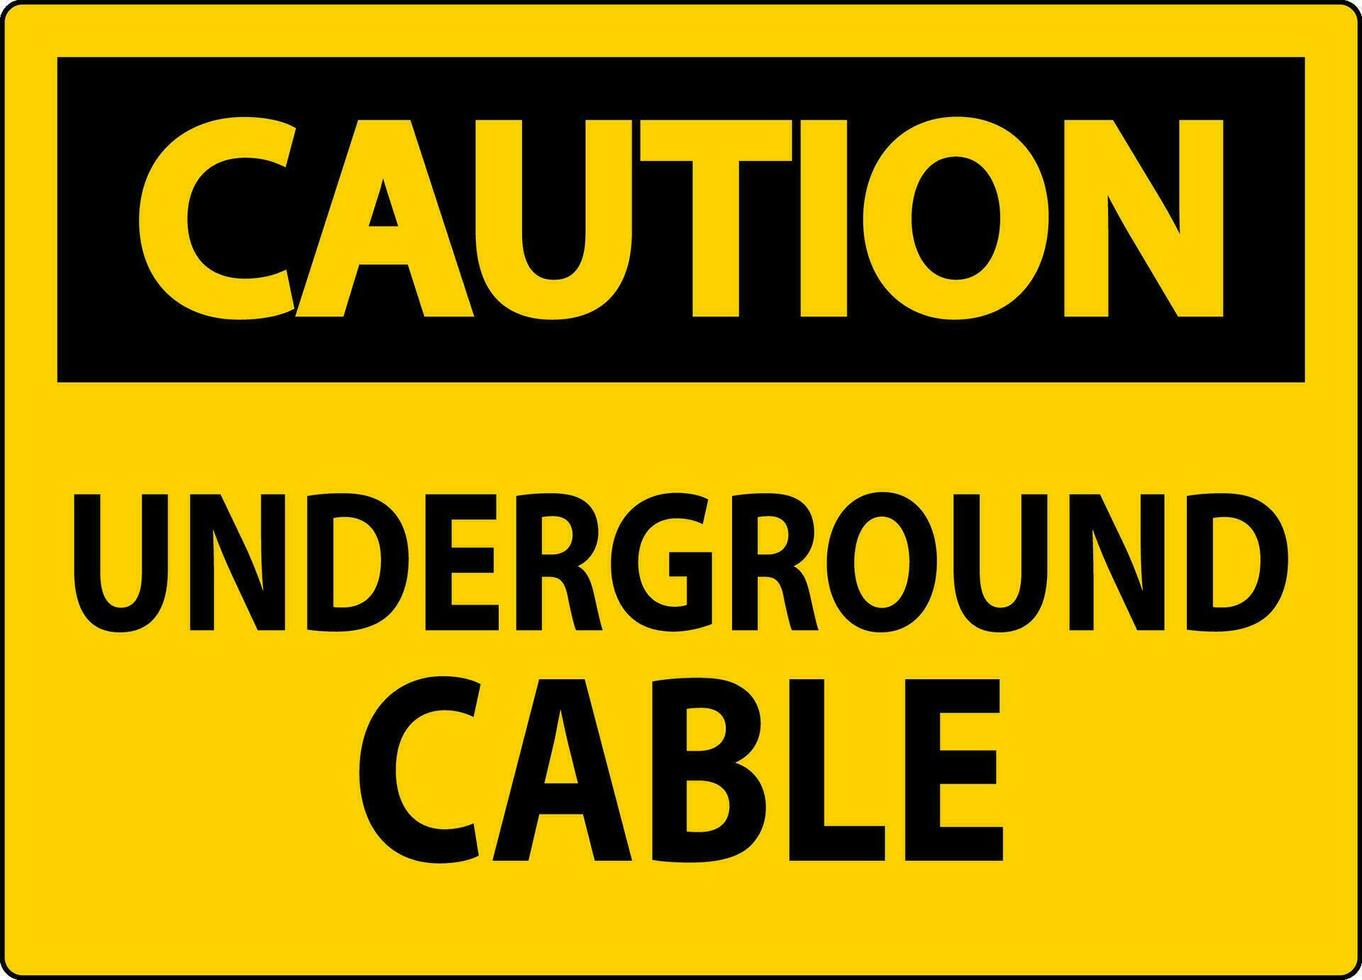 precaución firmar, subterráneo cable vector